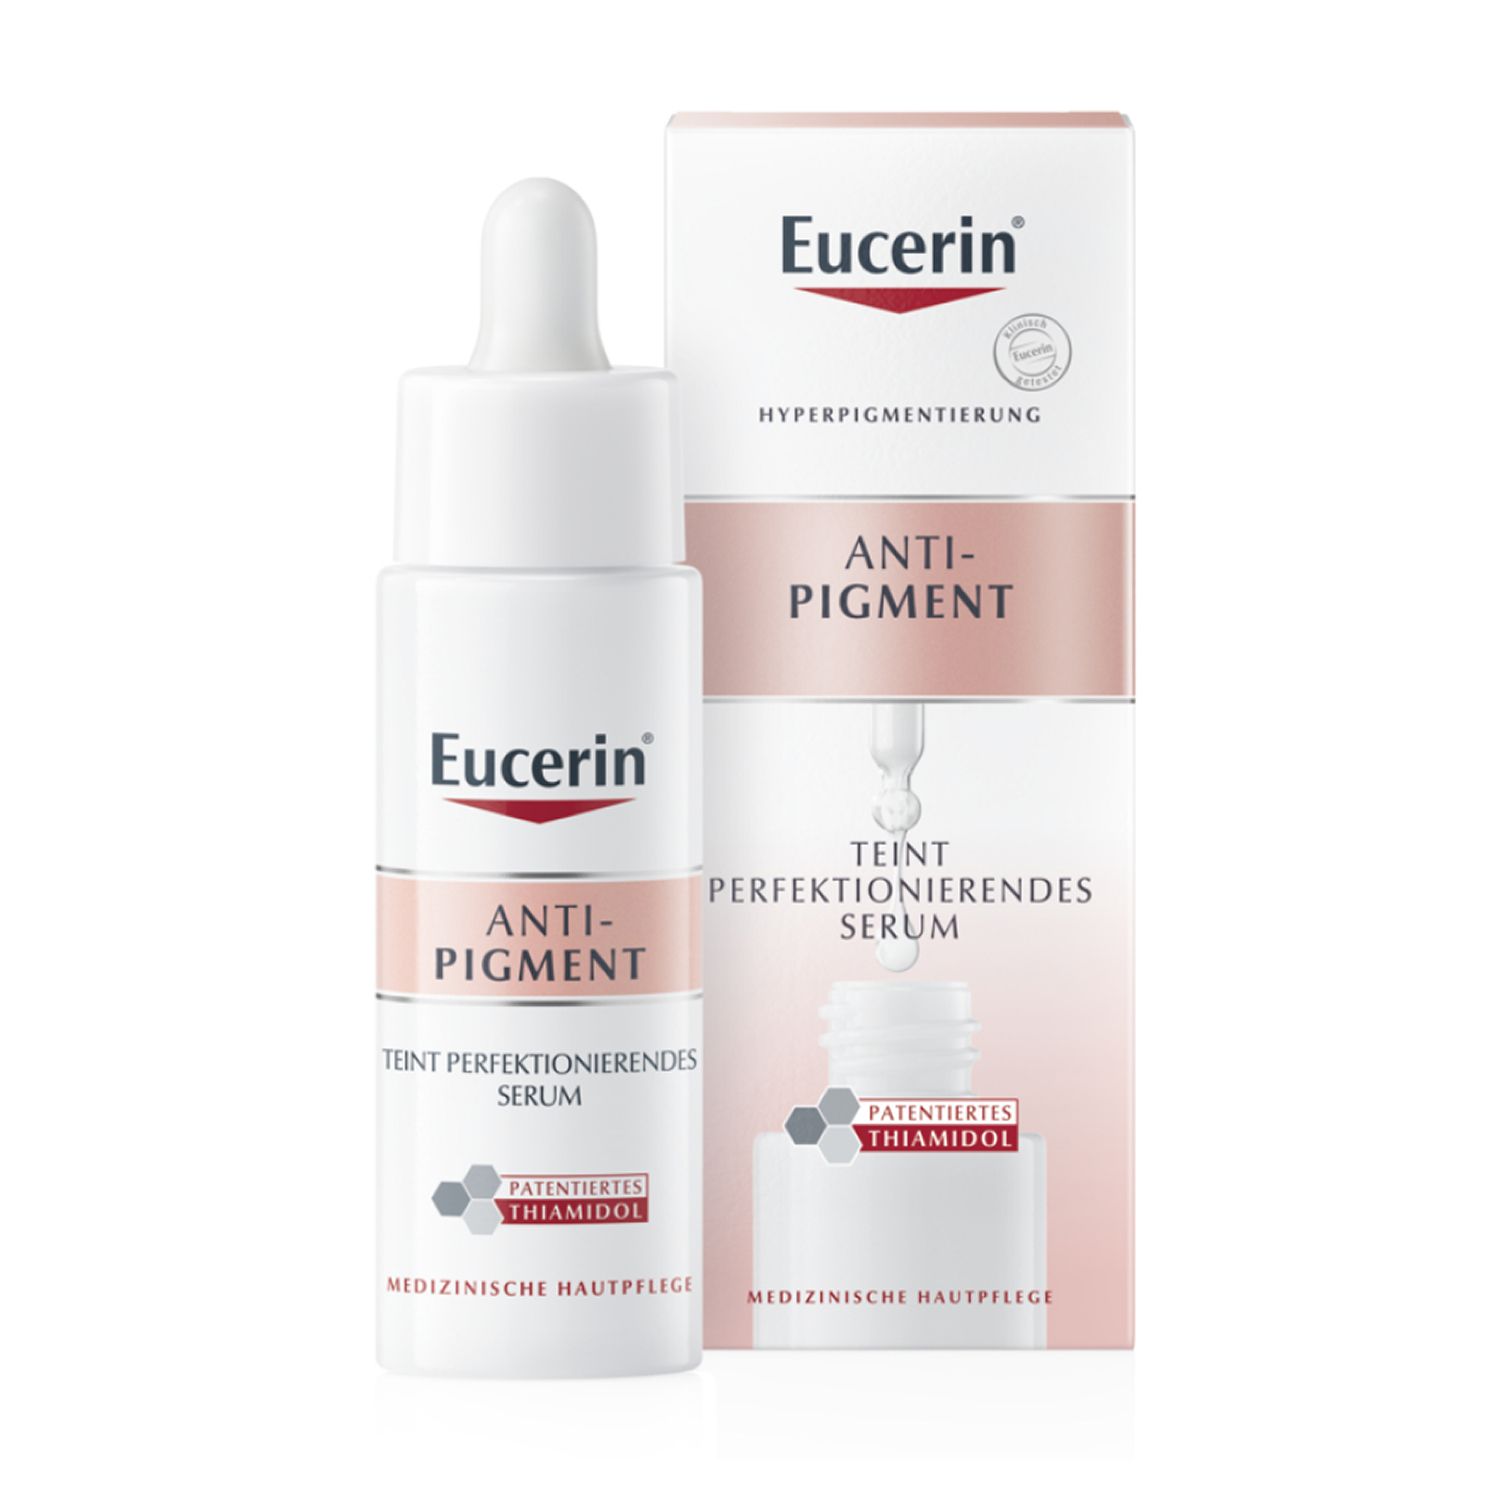 Eucerin® Anti-Pigment Serum mit Thiamidol® und Hyaluronsäure, Teint perfektionierend gegen Pigmentflecken  + Zusatzbeigabe: Eucerin DermatoCLEAN Mizellen-Reinigungsfluid 100ml